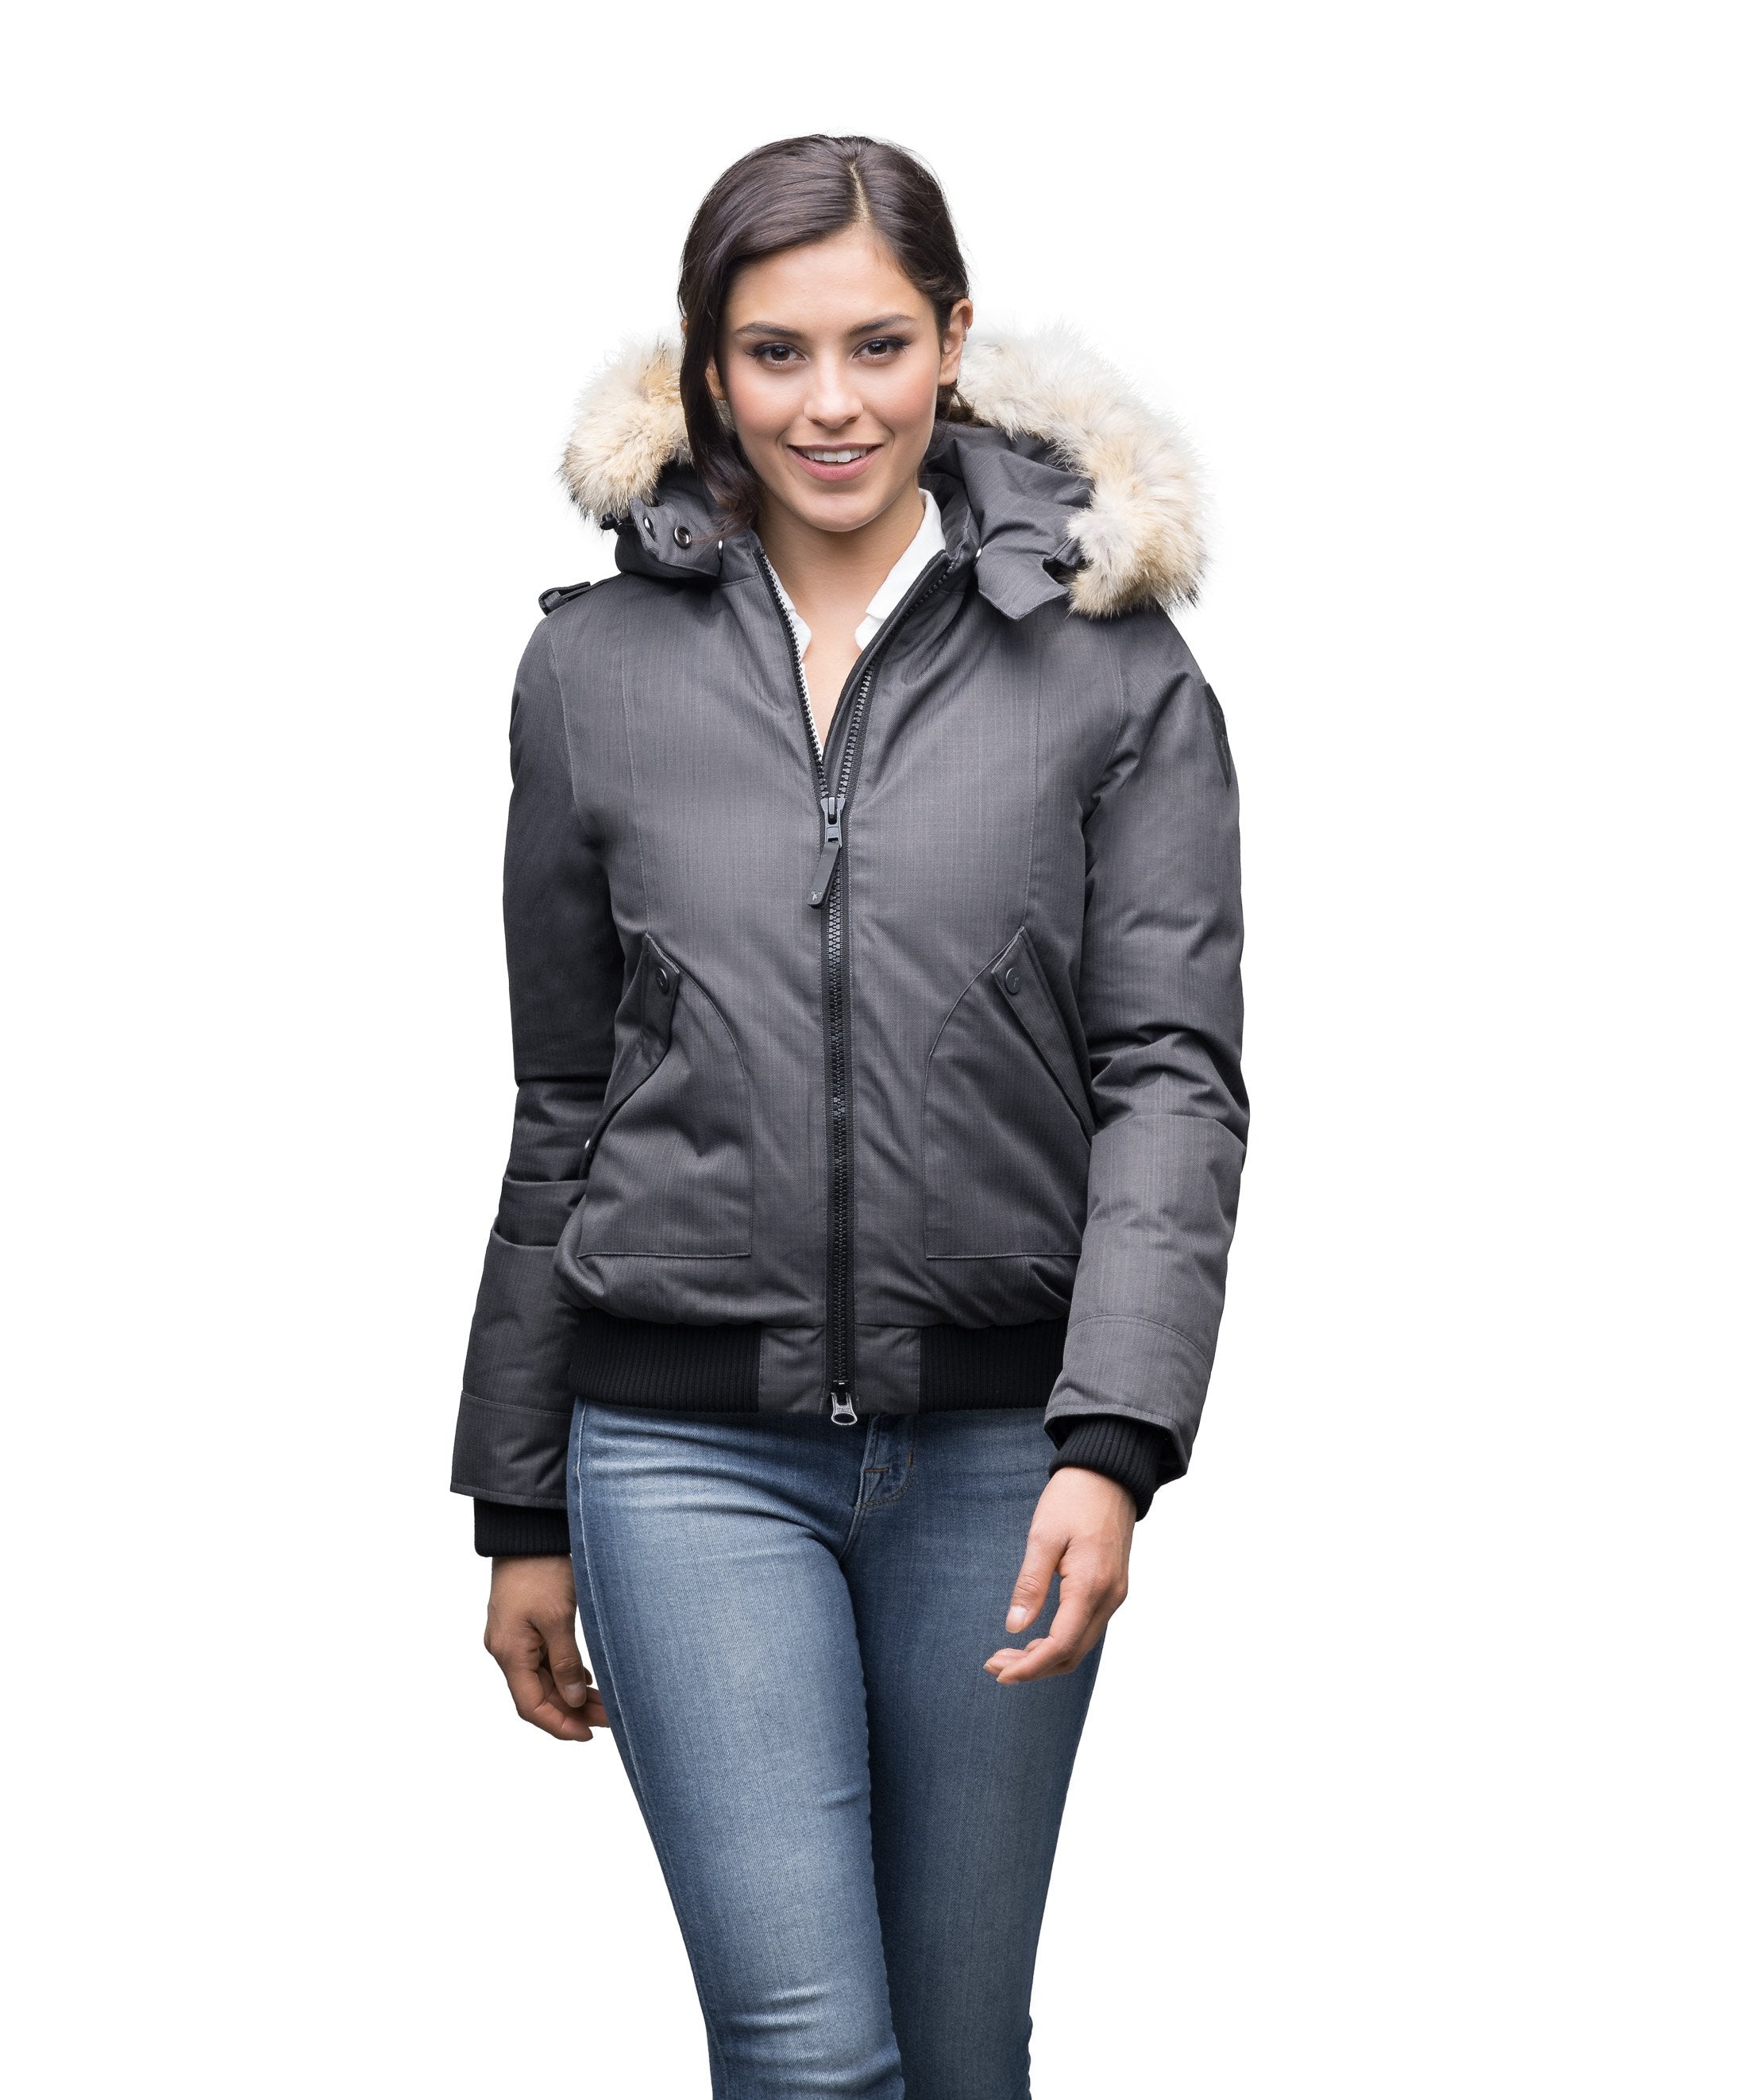 Buy Mehak-Fashion Women's Fleece Standard Length Winter Jacket (38, Blue)  at Amazon.in